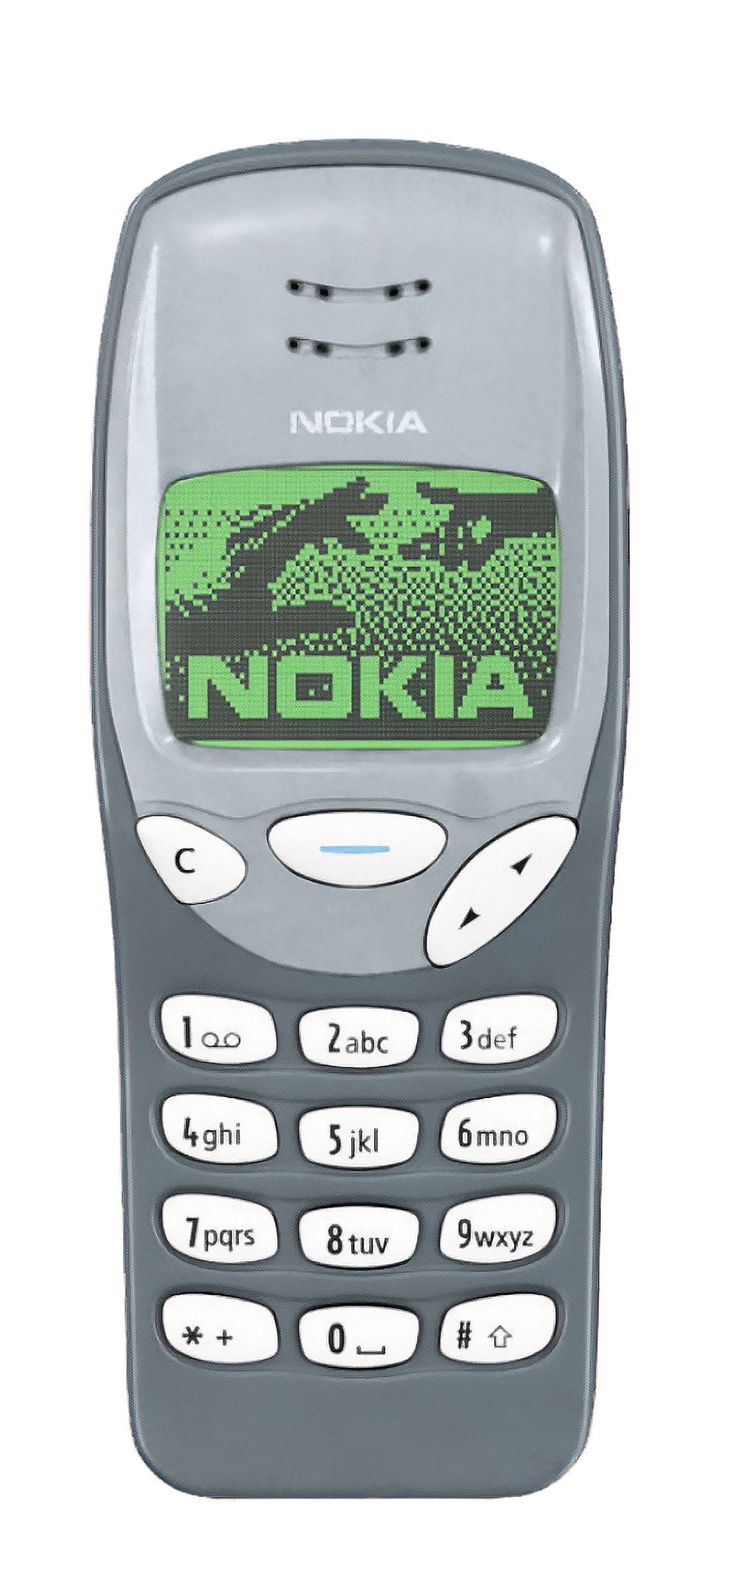 Nokia 3210 Retro 1999 Handy 25 Jahre alt.